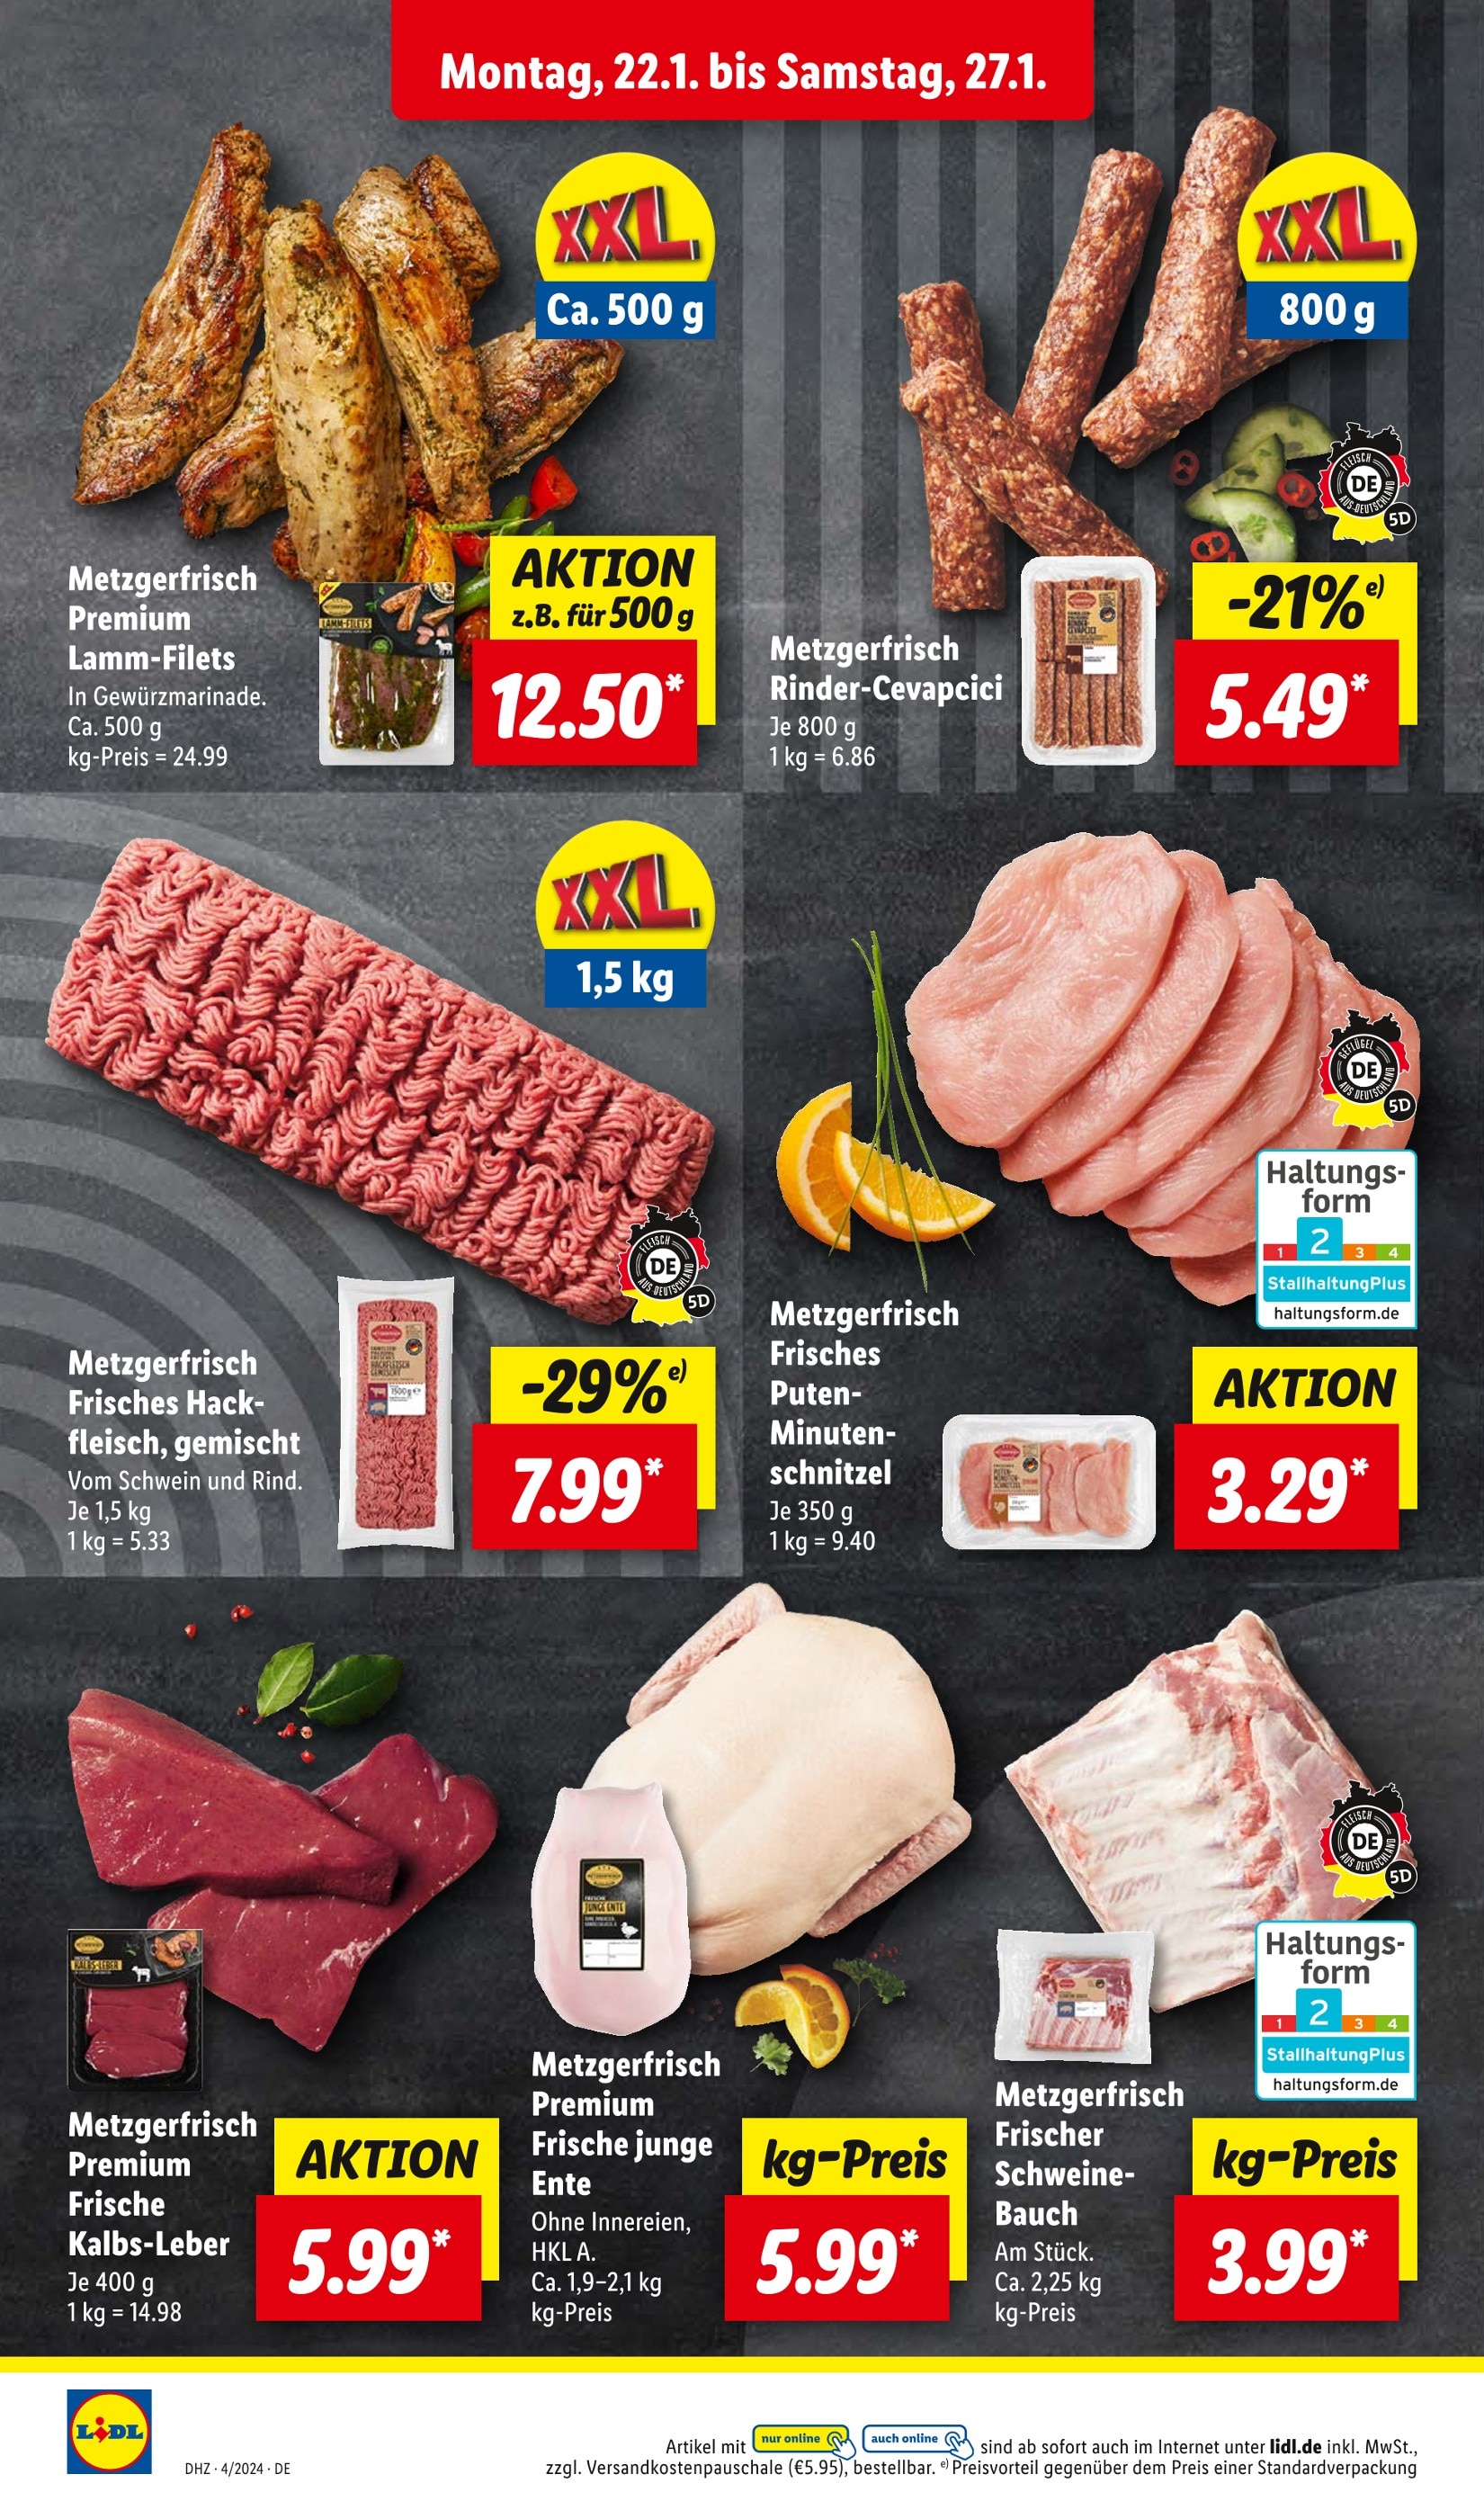 Angebote in Hackfleisch günstig - kaufen! jetzt 🔥 Hannover